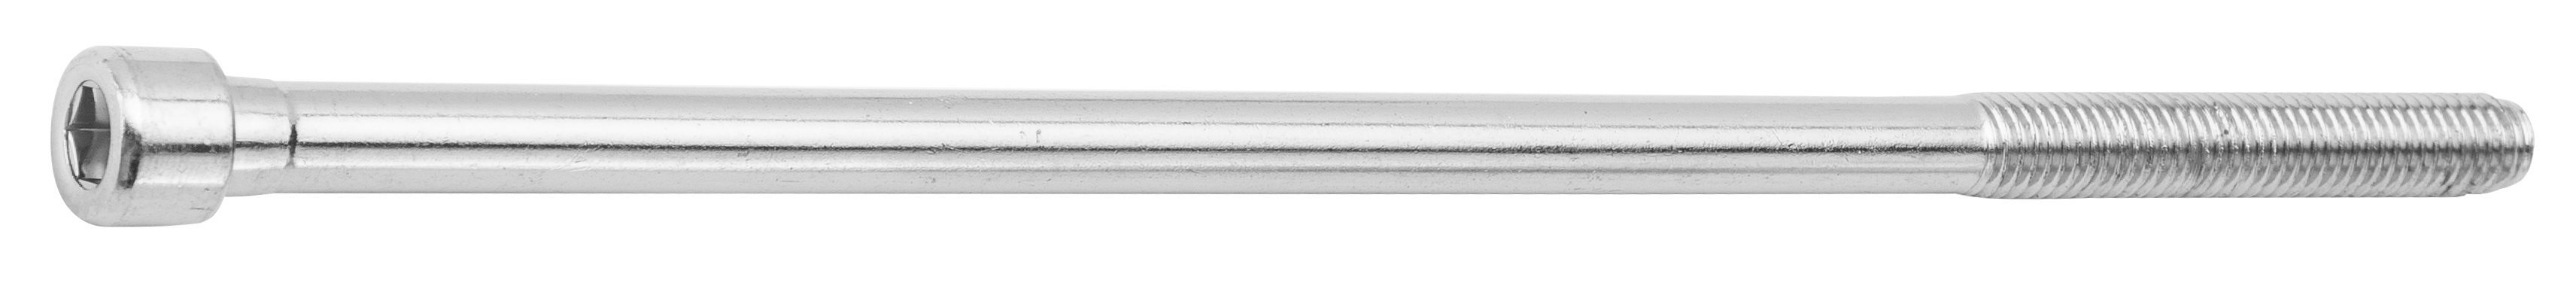 Болт выноса руля сталь (без гайки), 235 мм, под шестигранник